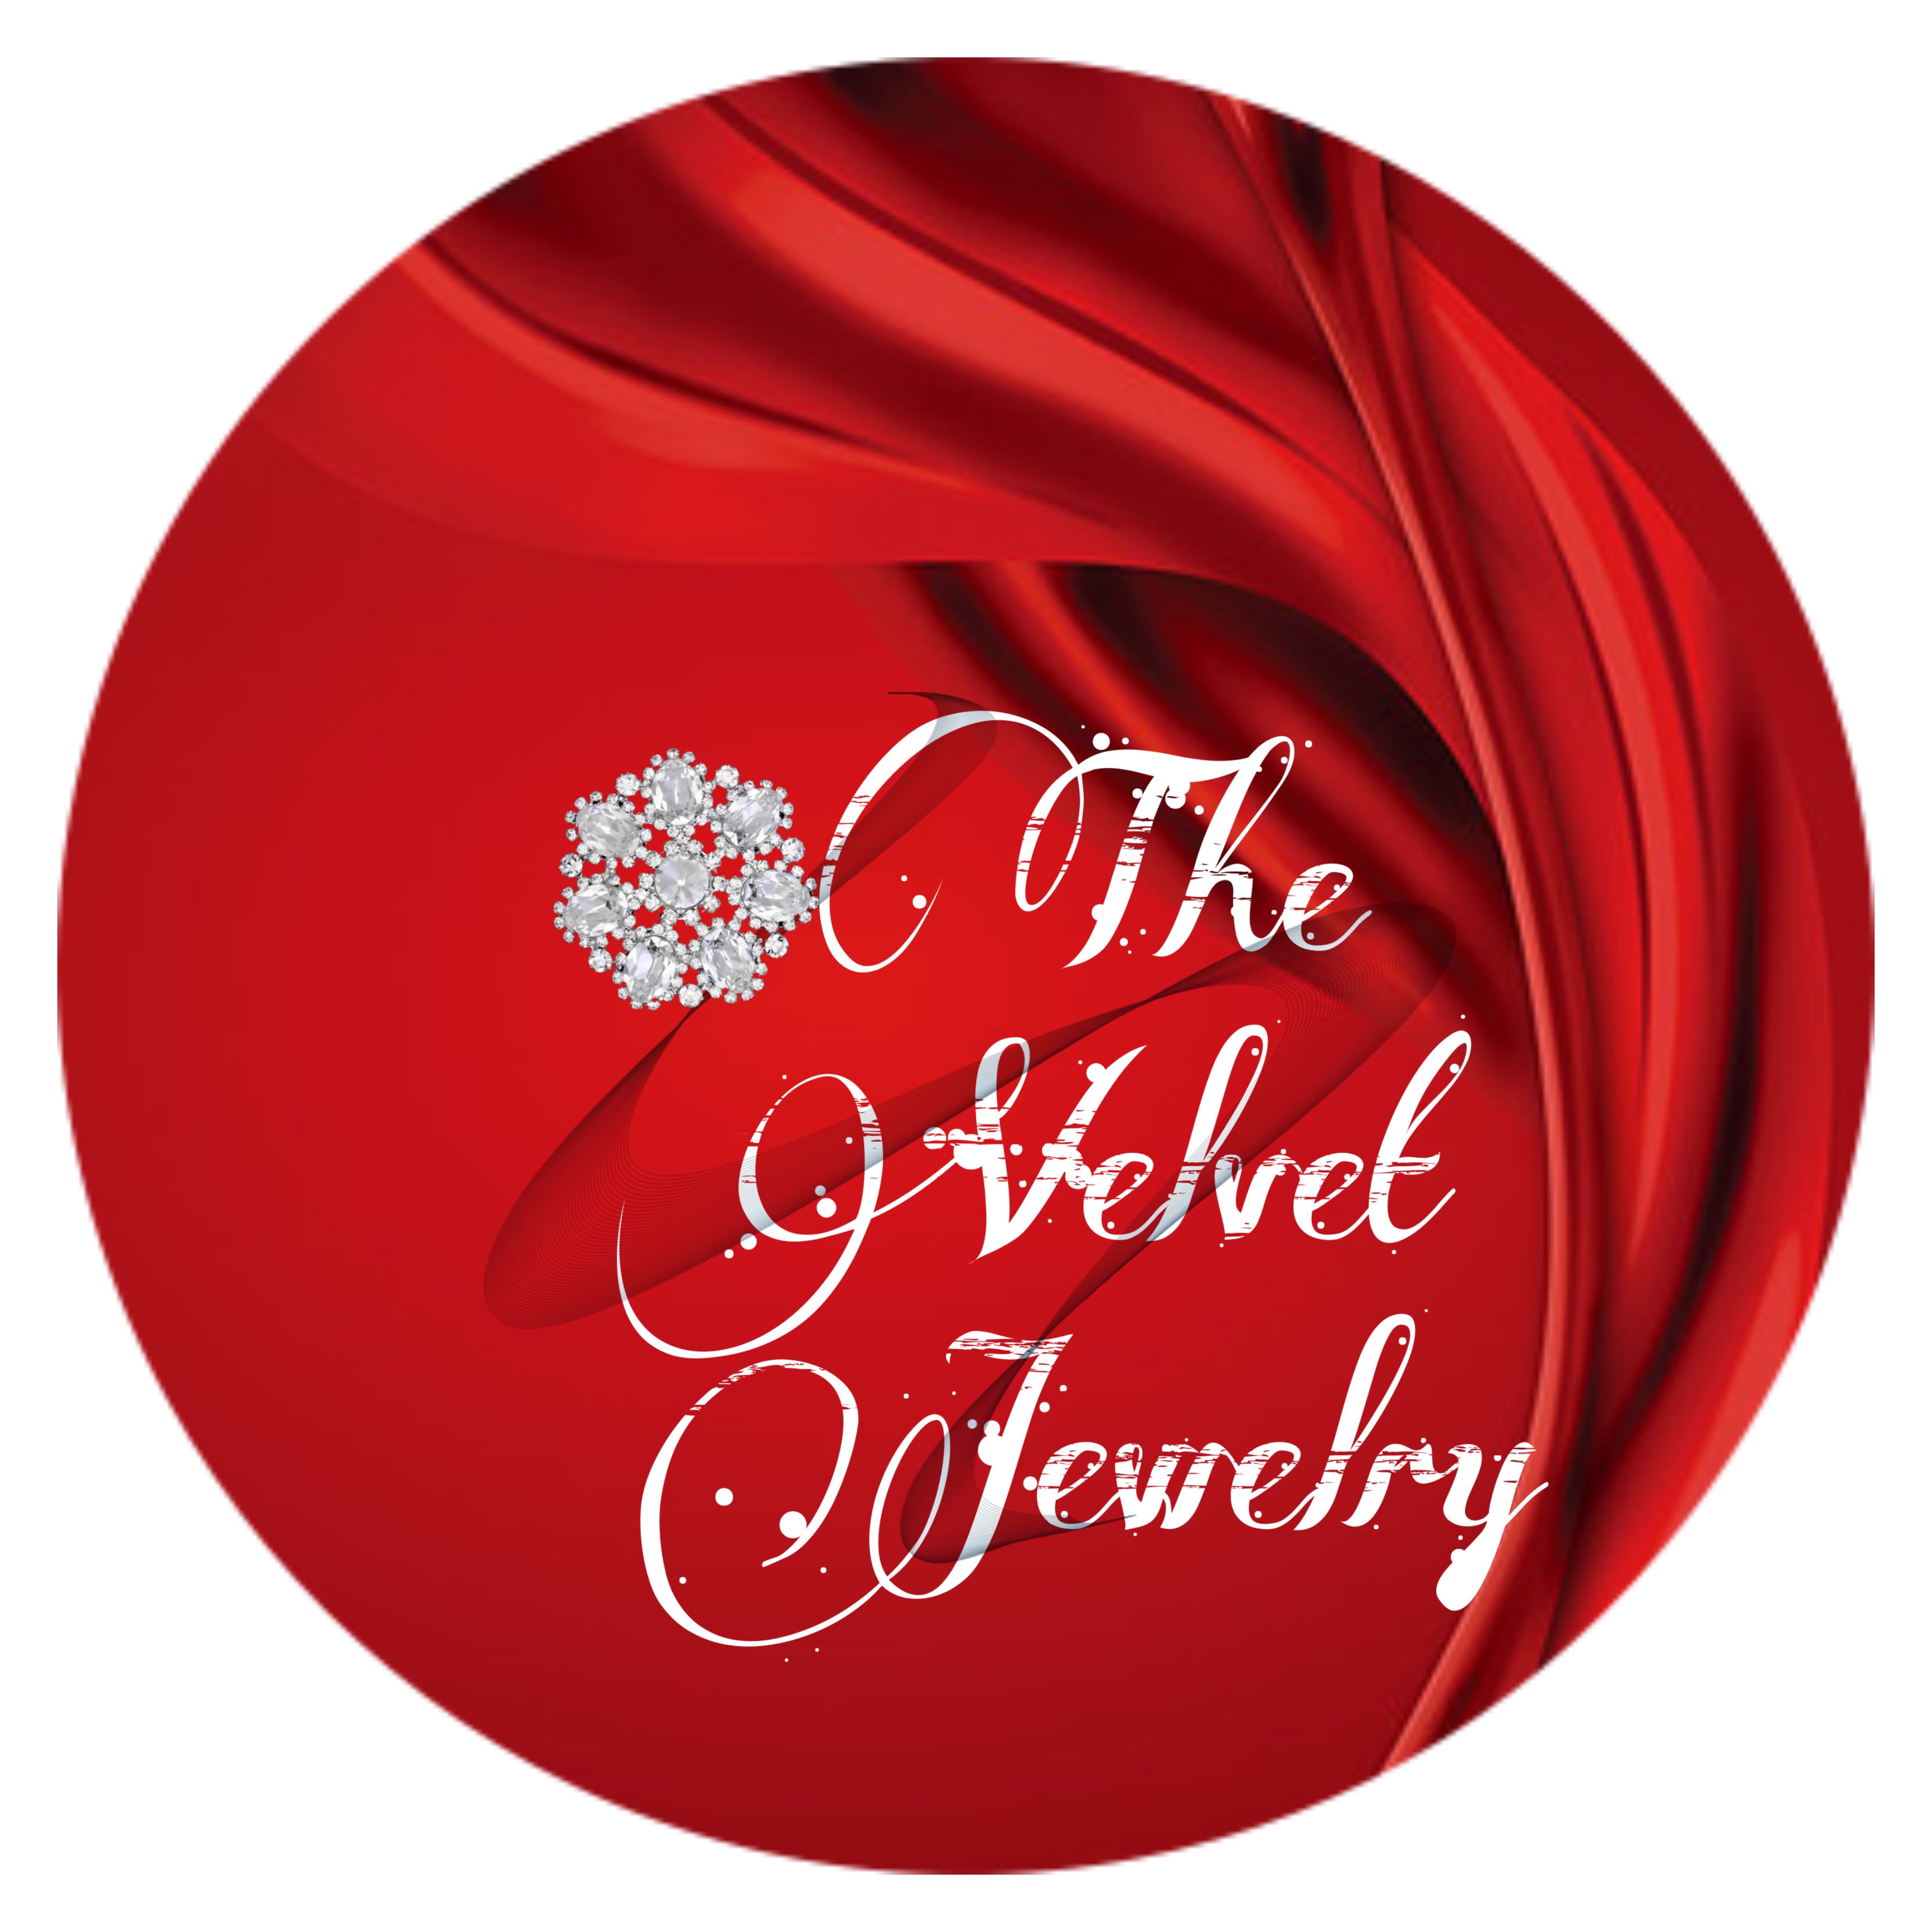 The Velvet Jewelry